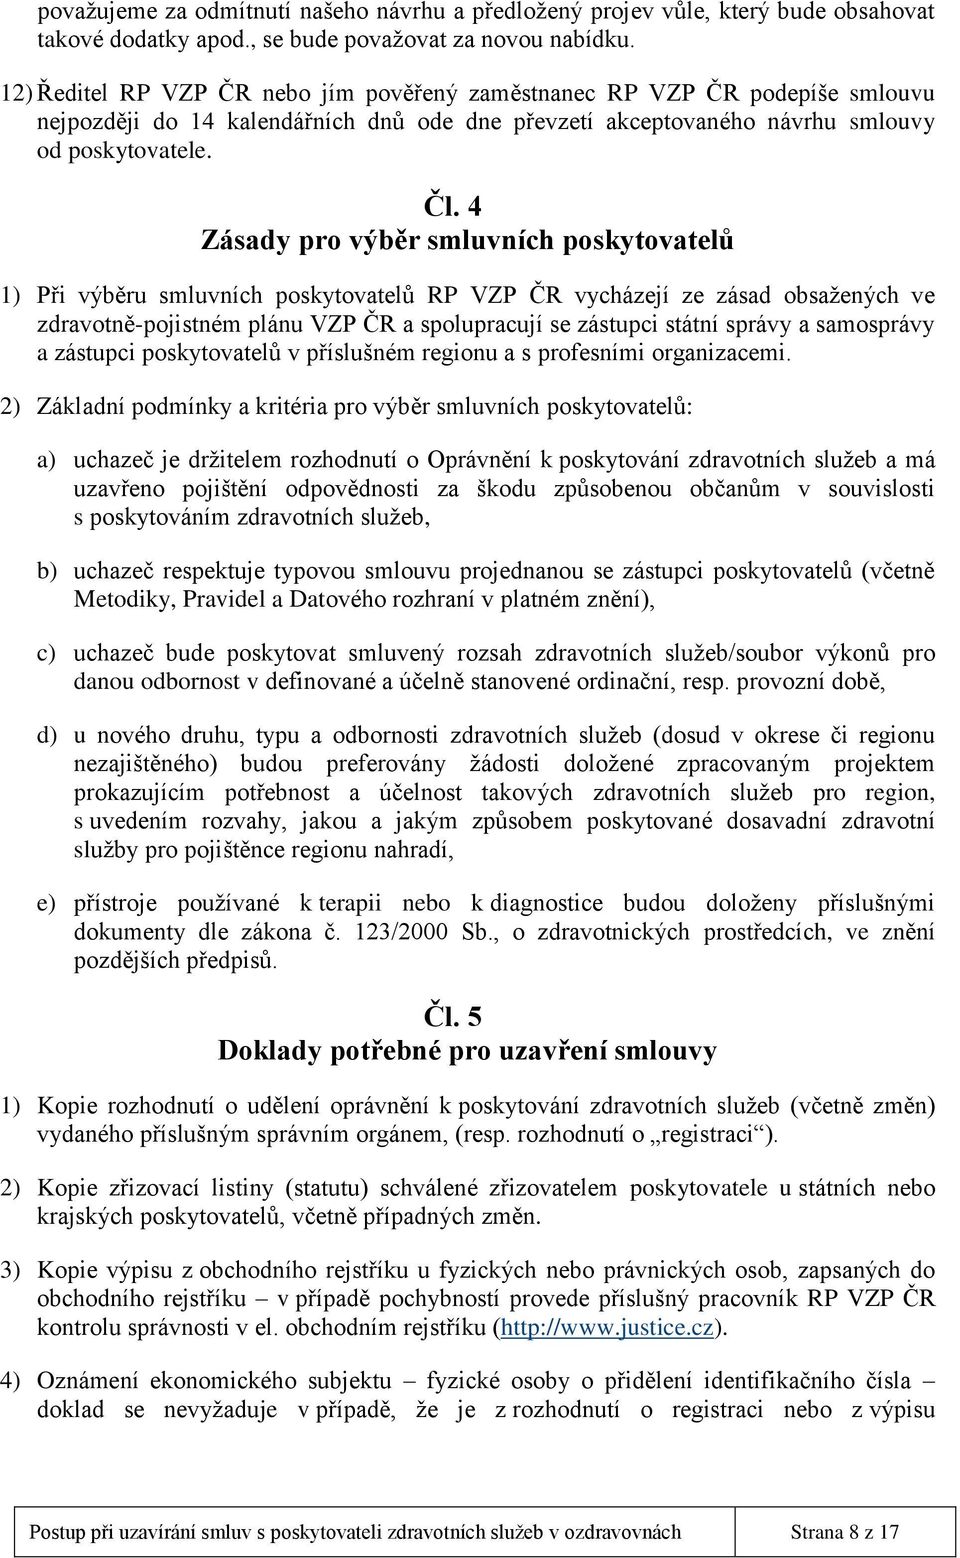 4 Zásady pro výběr smluvních poskytovatelů 1) Při výběru smluvních poskytovatelů RP VZP ČR vycházejí ze zásad obsažených ve zdravotně-pojistném plánu VZP ČR a spolupracují se zástupci státní správy a